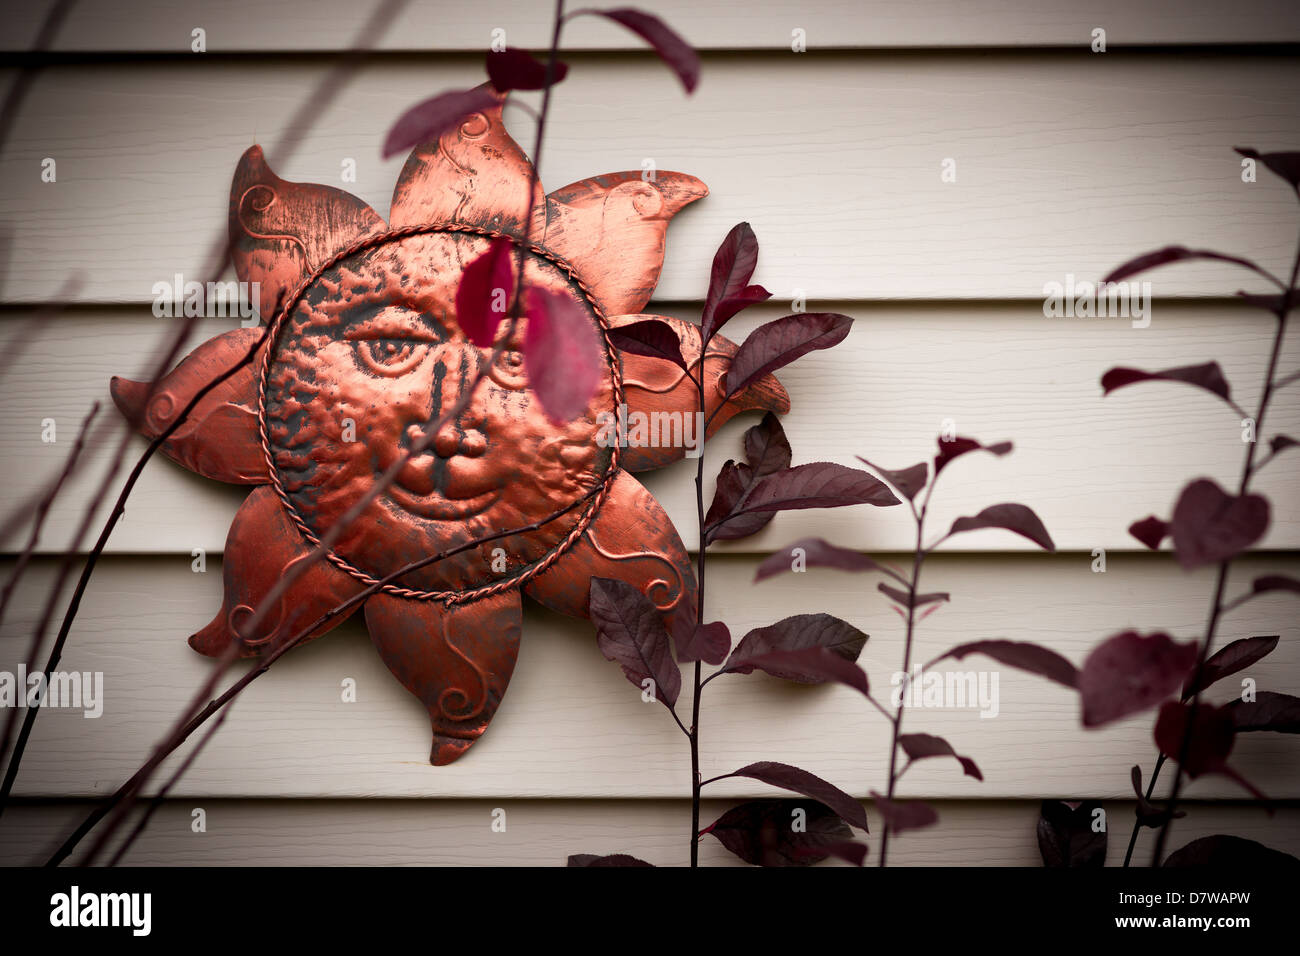 Un sonriente sol rostro ornamento metálico colgado en una pared. Foto de stock